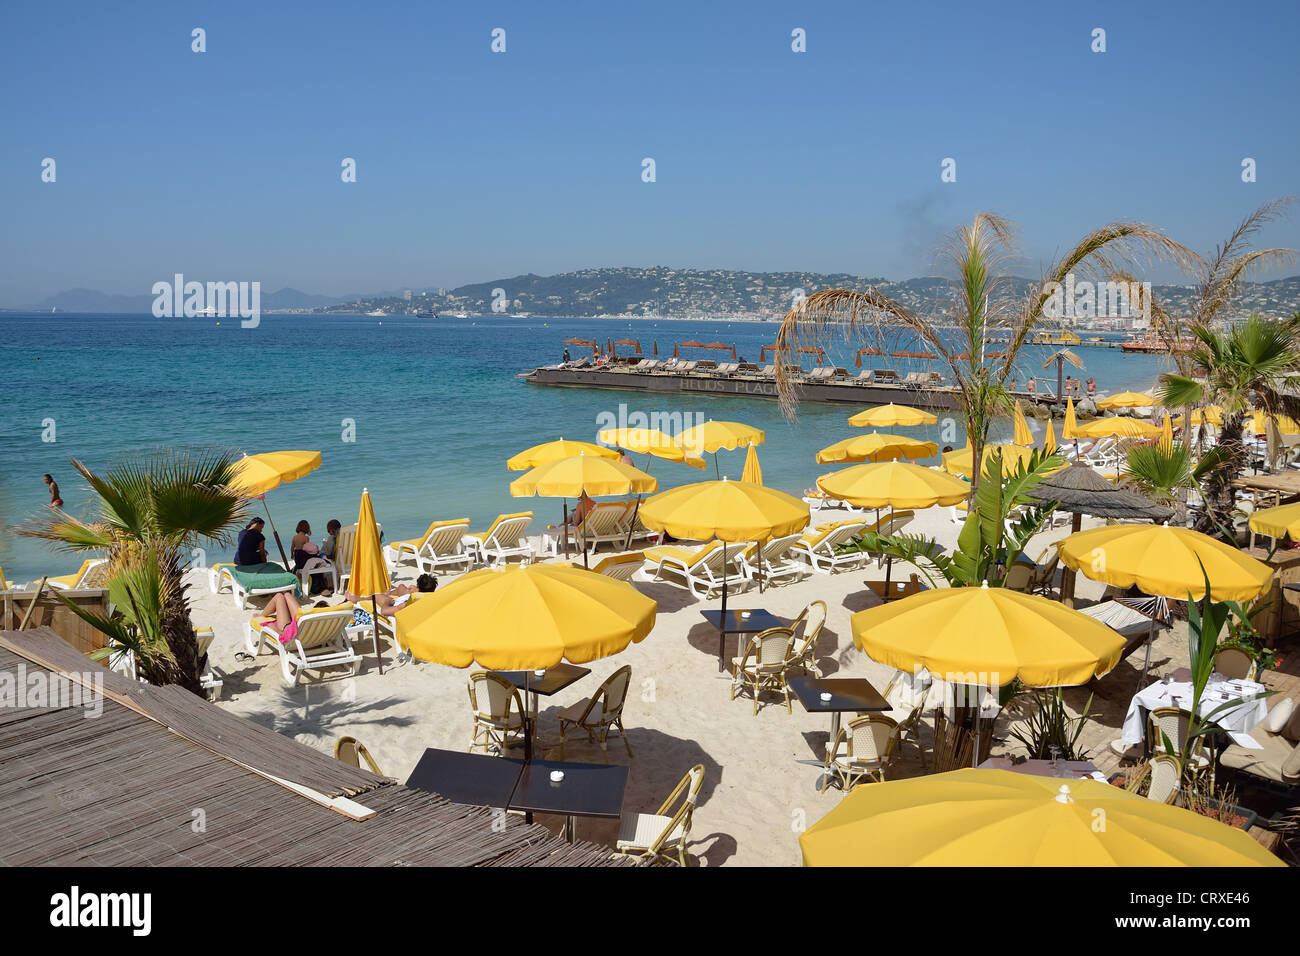 'La Douce' restaurant and beach, Juan-les-Pins, Côte d'Azur, Alpes-Maritimes, Provence-Alpes-Côte d'Azur, France Stock Photo